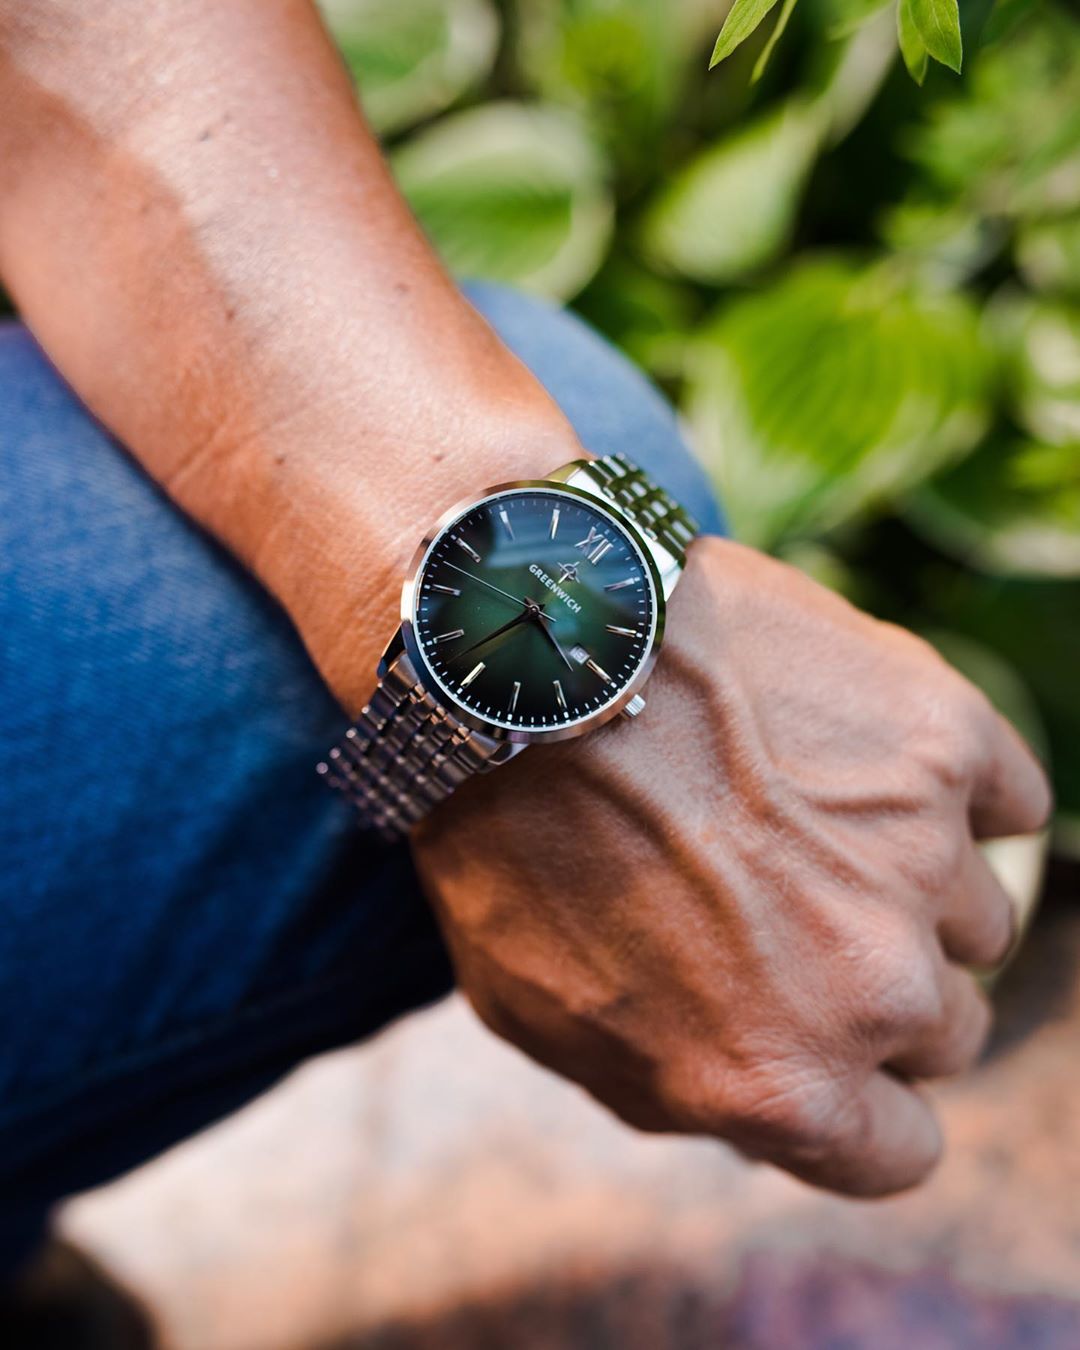 Гринвич кварцевые часы для современных, активных мужчин. Эта модель имеет корпус из нержавеющей стали 41 мм и доступна в двух вариантах: с браслетом из нержавеющей стали или ремешком из натуральной кожи. 